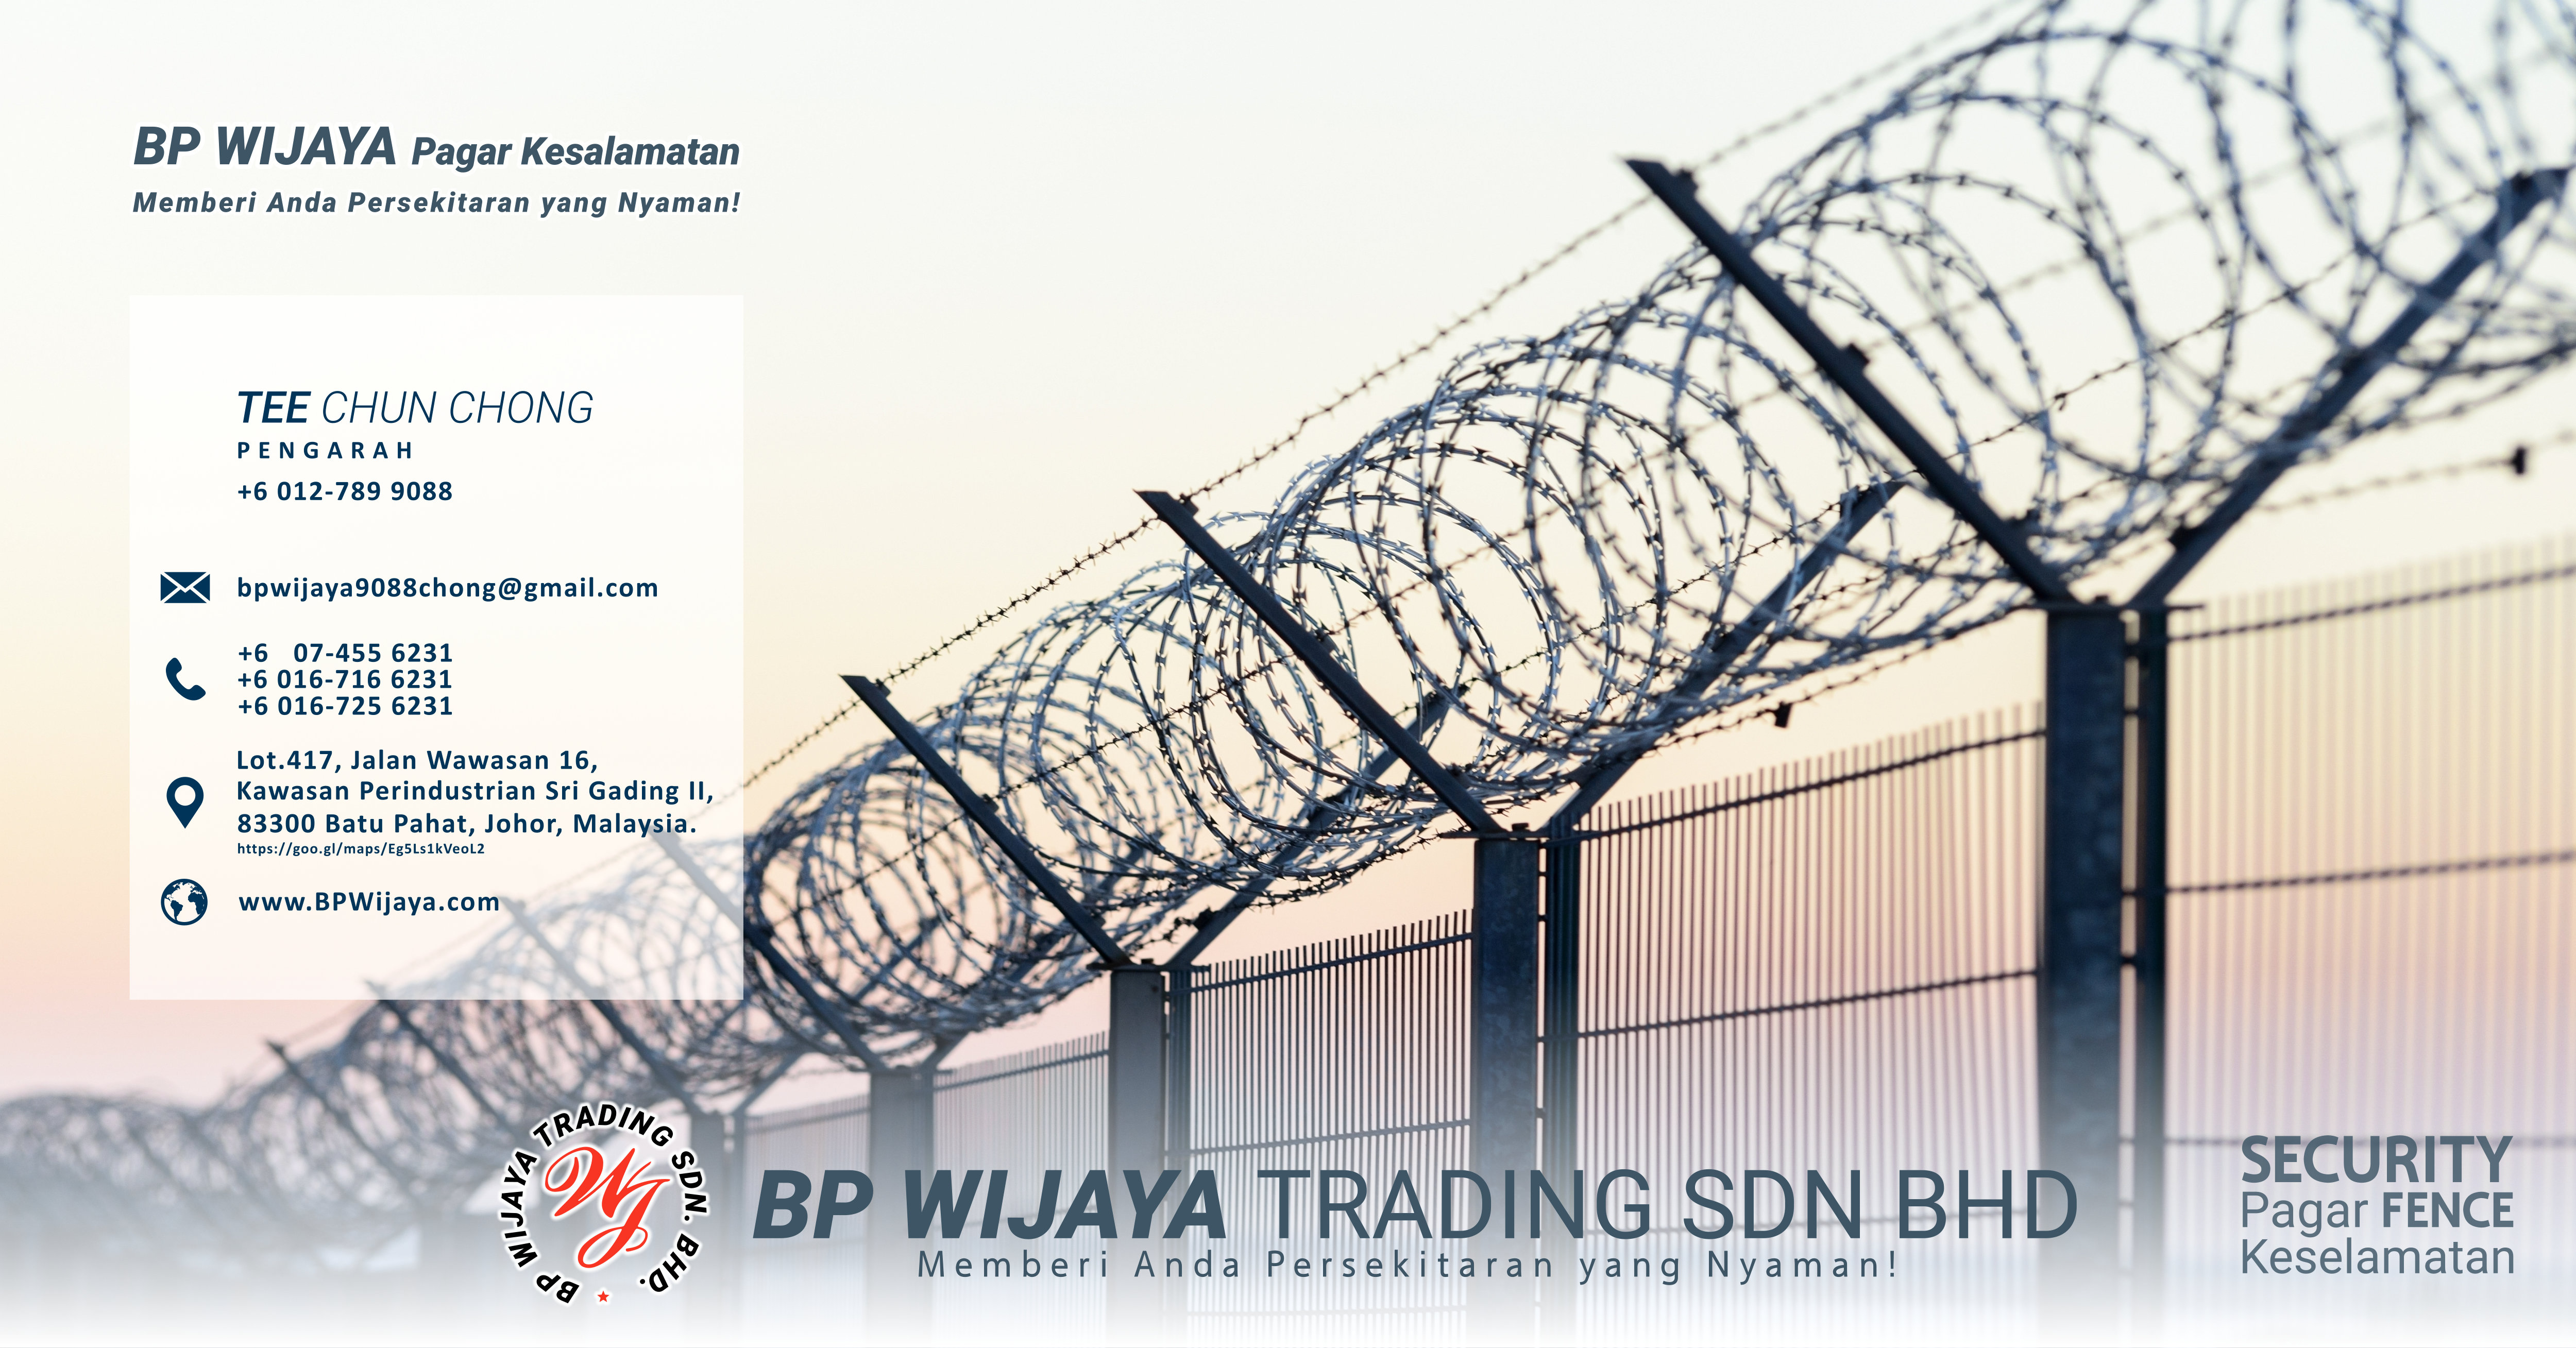 BP Wijaya Trading Sdn Bhd – Pagar Keselamatan